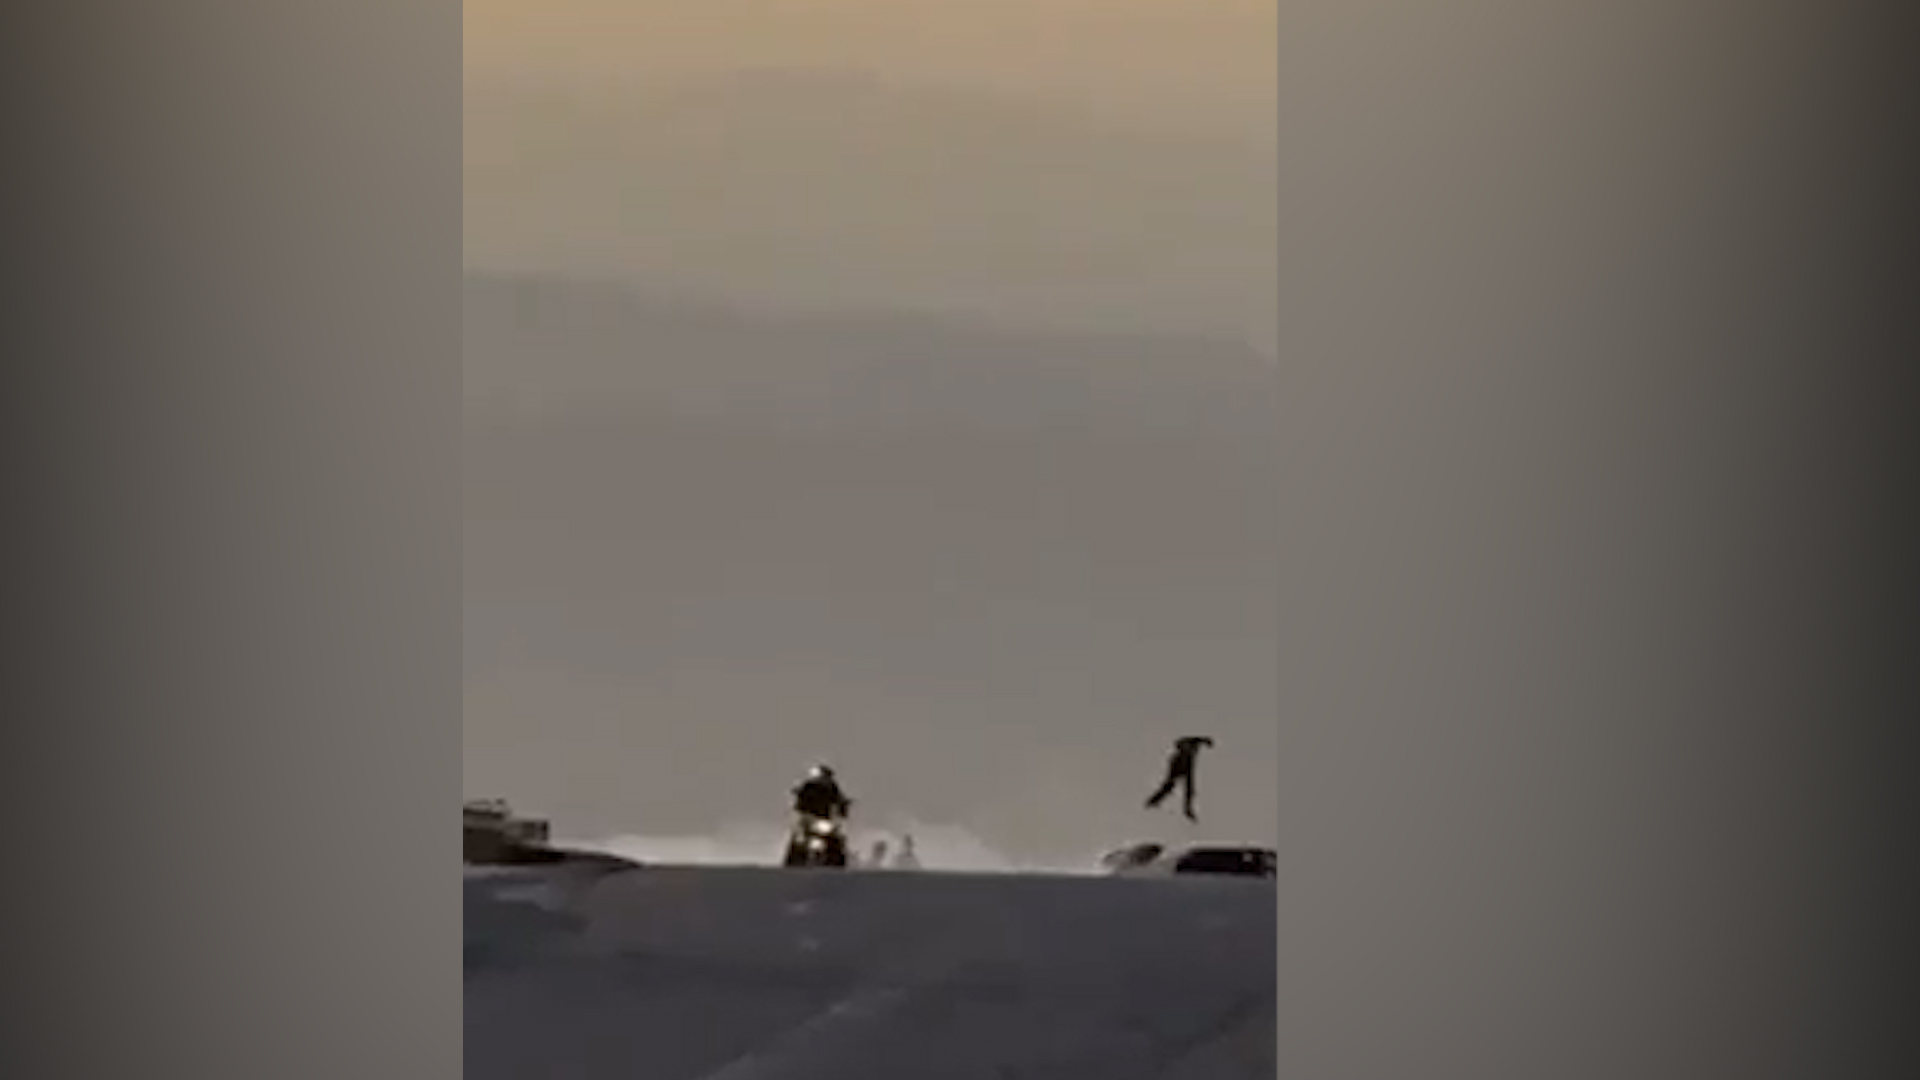 سائق الدراجة "طار في الهواء".. فيديو لحادث تصادم بمنطقة البحر الميت - فيديو